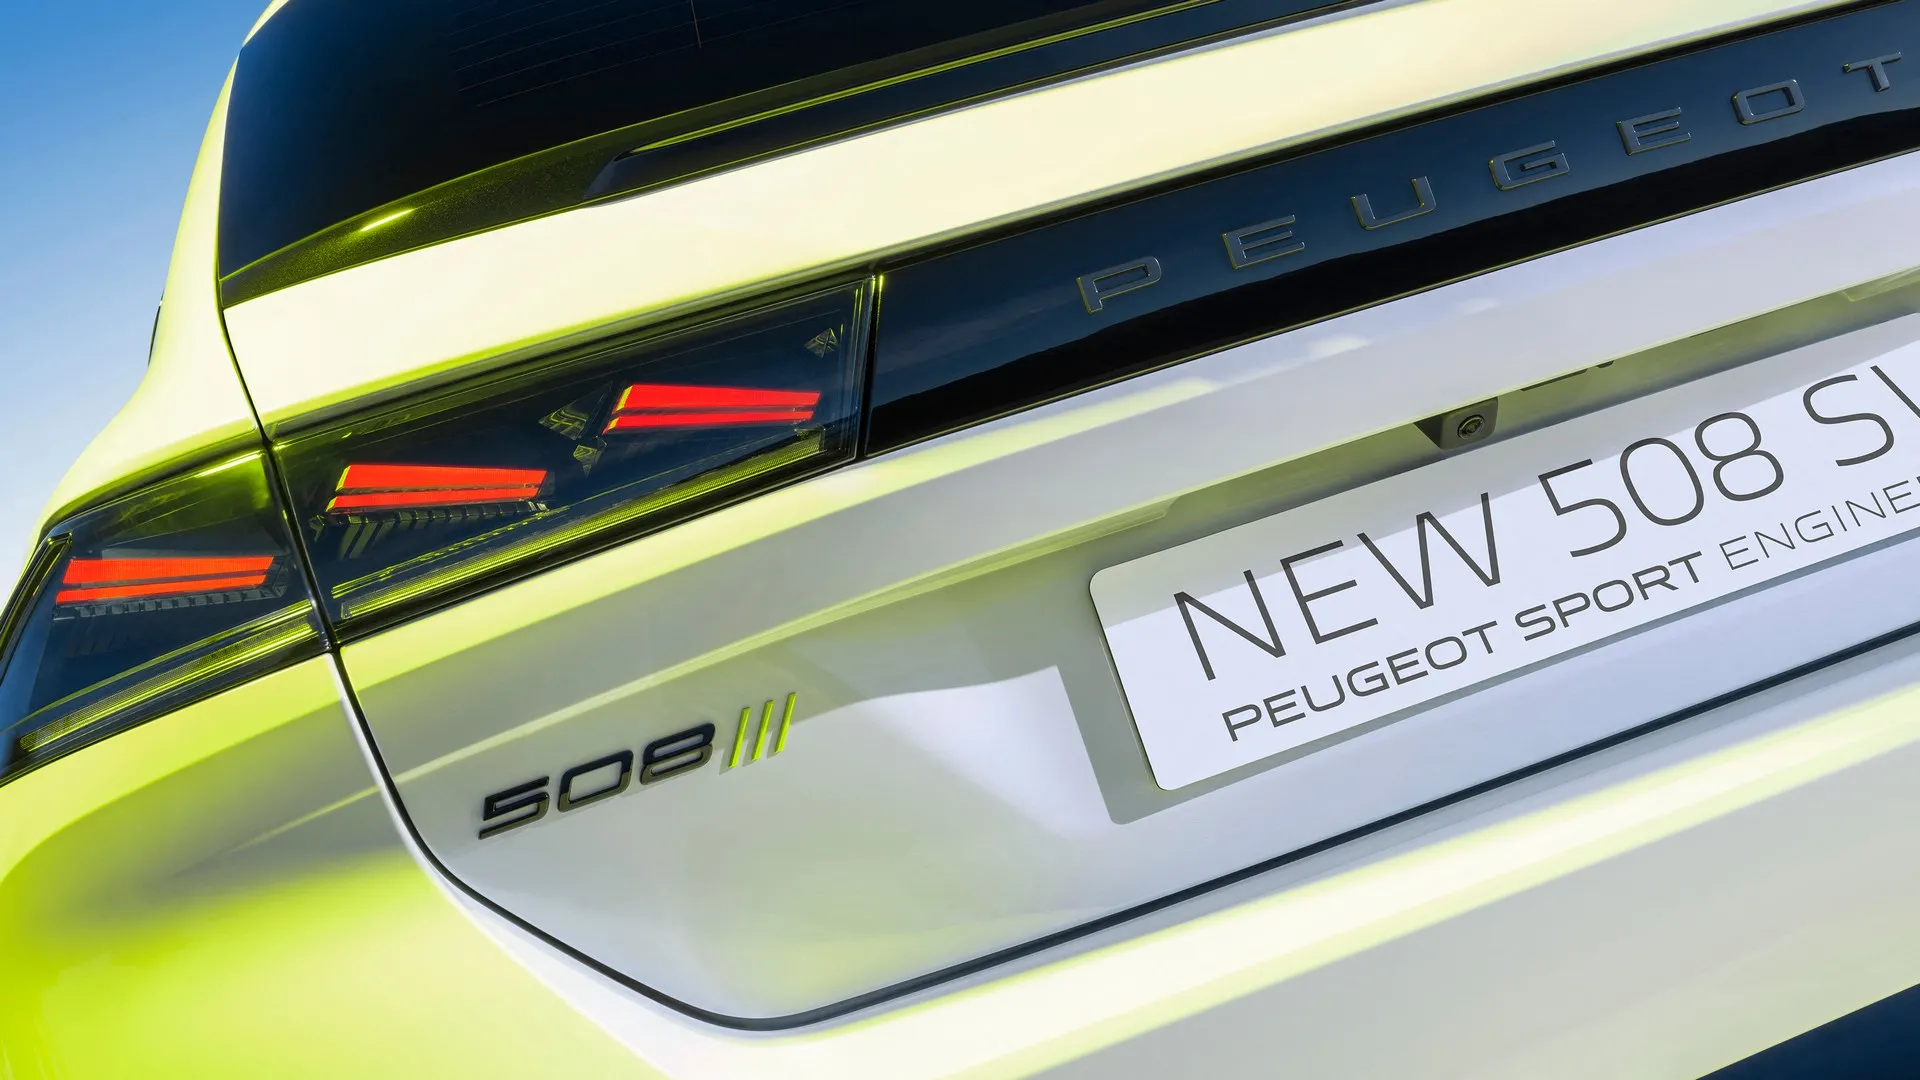 No habrá más modelos Peugeot PSE… de momento